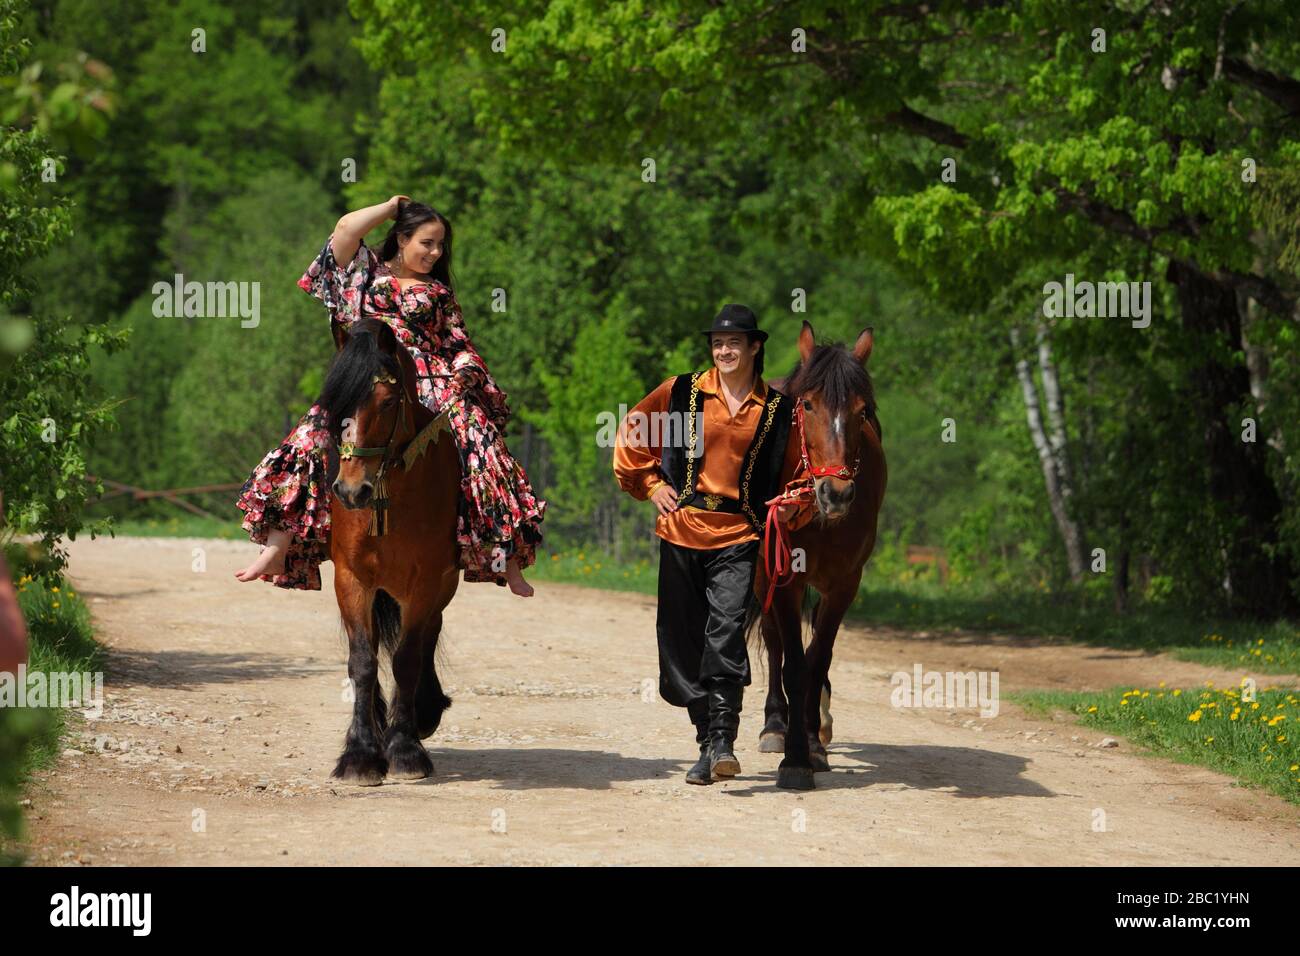 Coppia di zingari in costumi tradizionali passeggiate con un cavallo nei boschi estivi Foto Stock